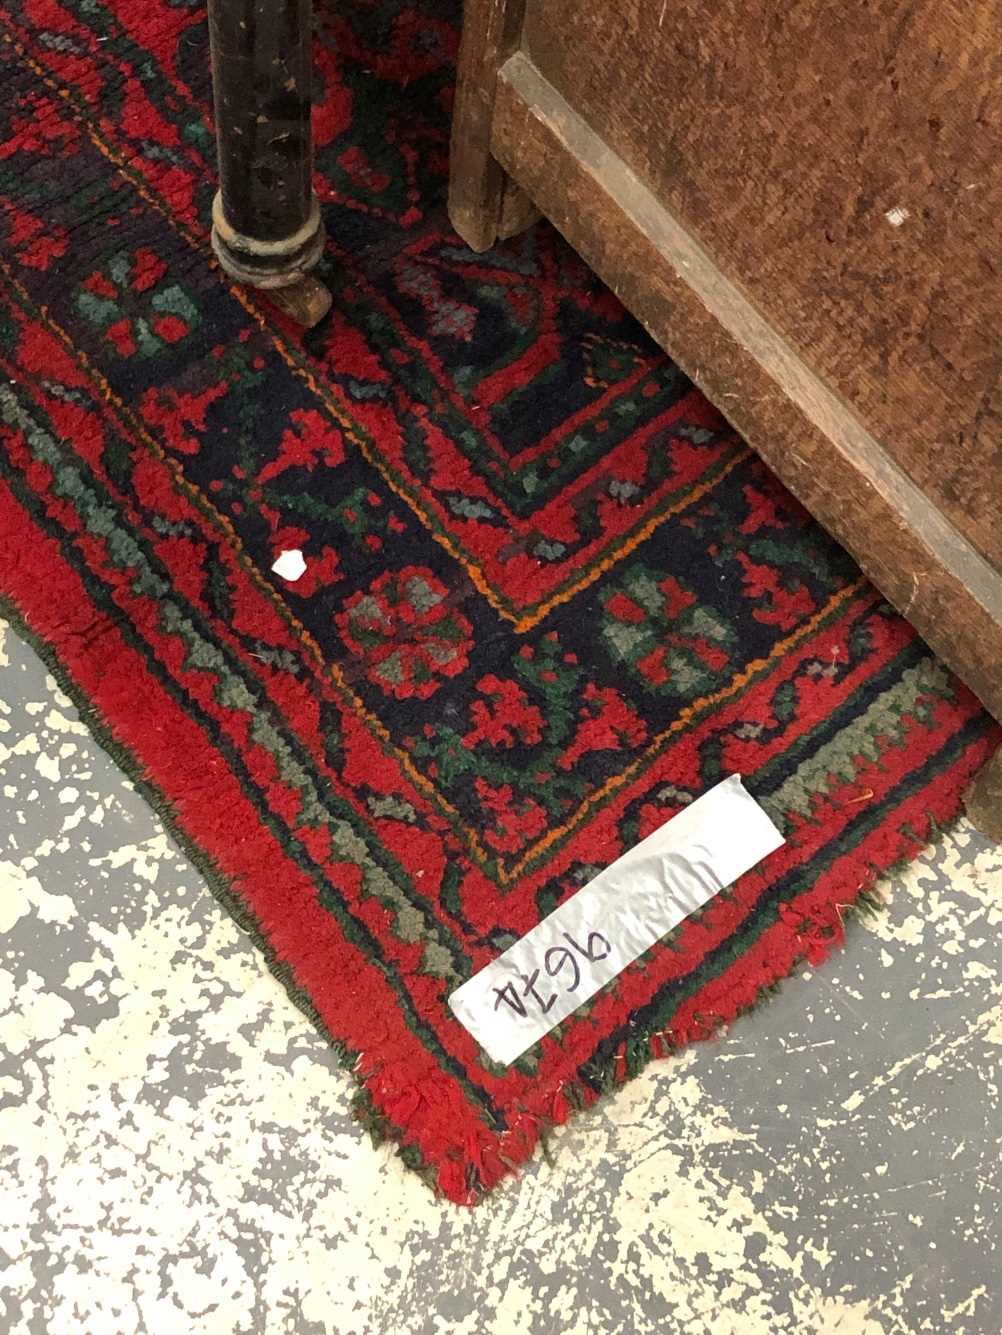 Turkish Oushak rug Measurements 264 x 188cms. - Image 2 of 18